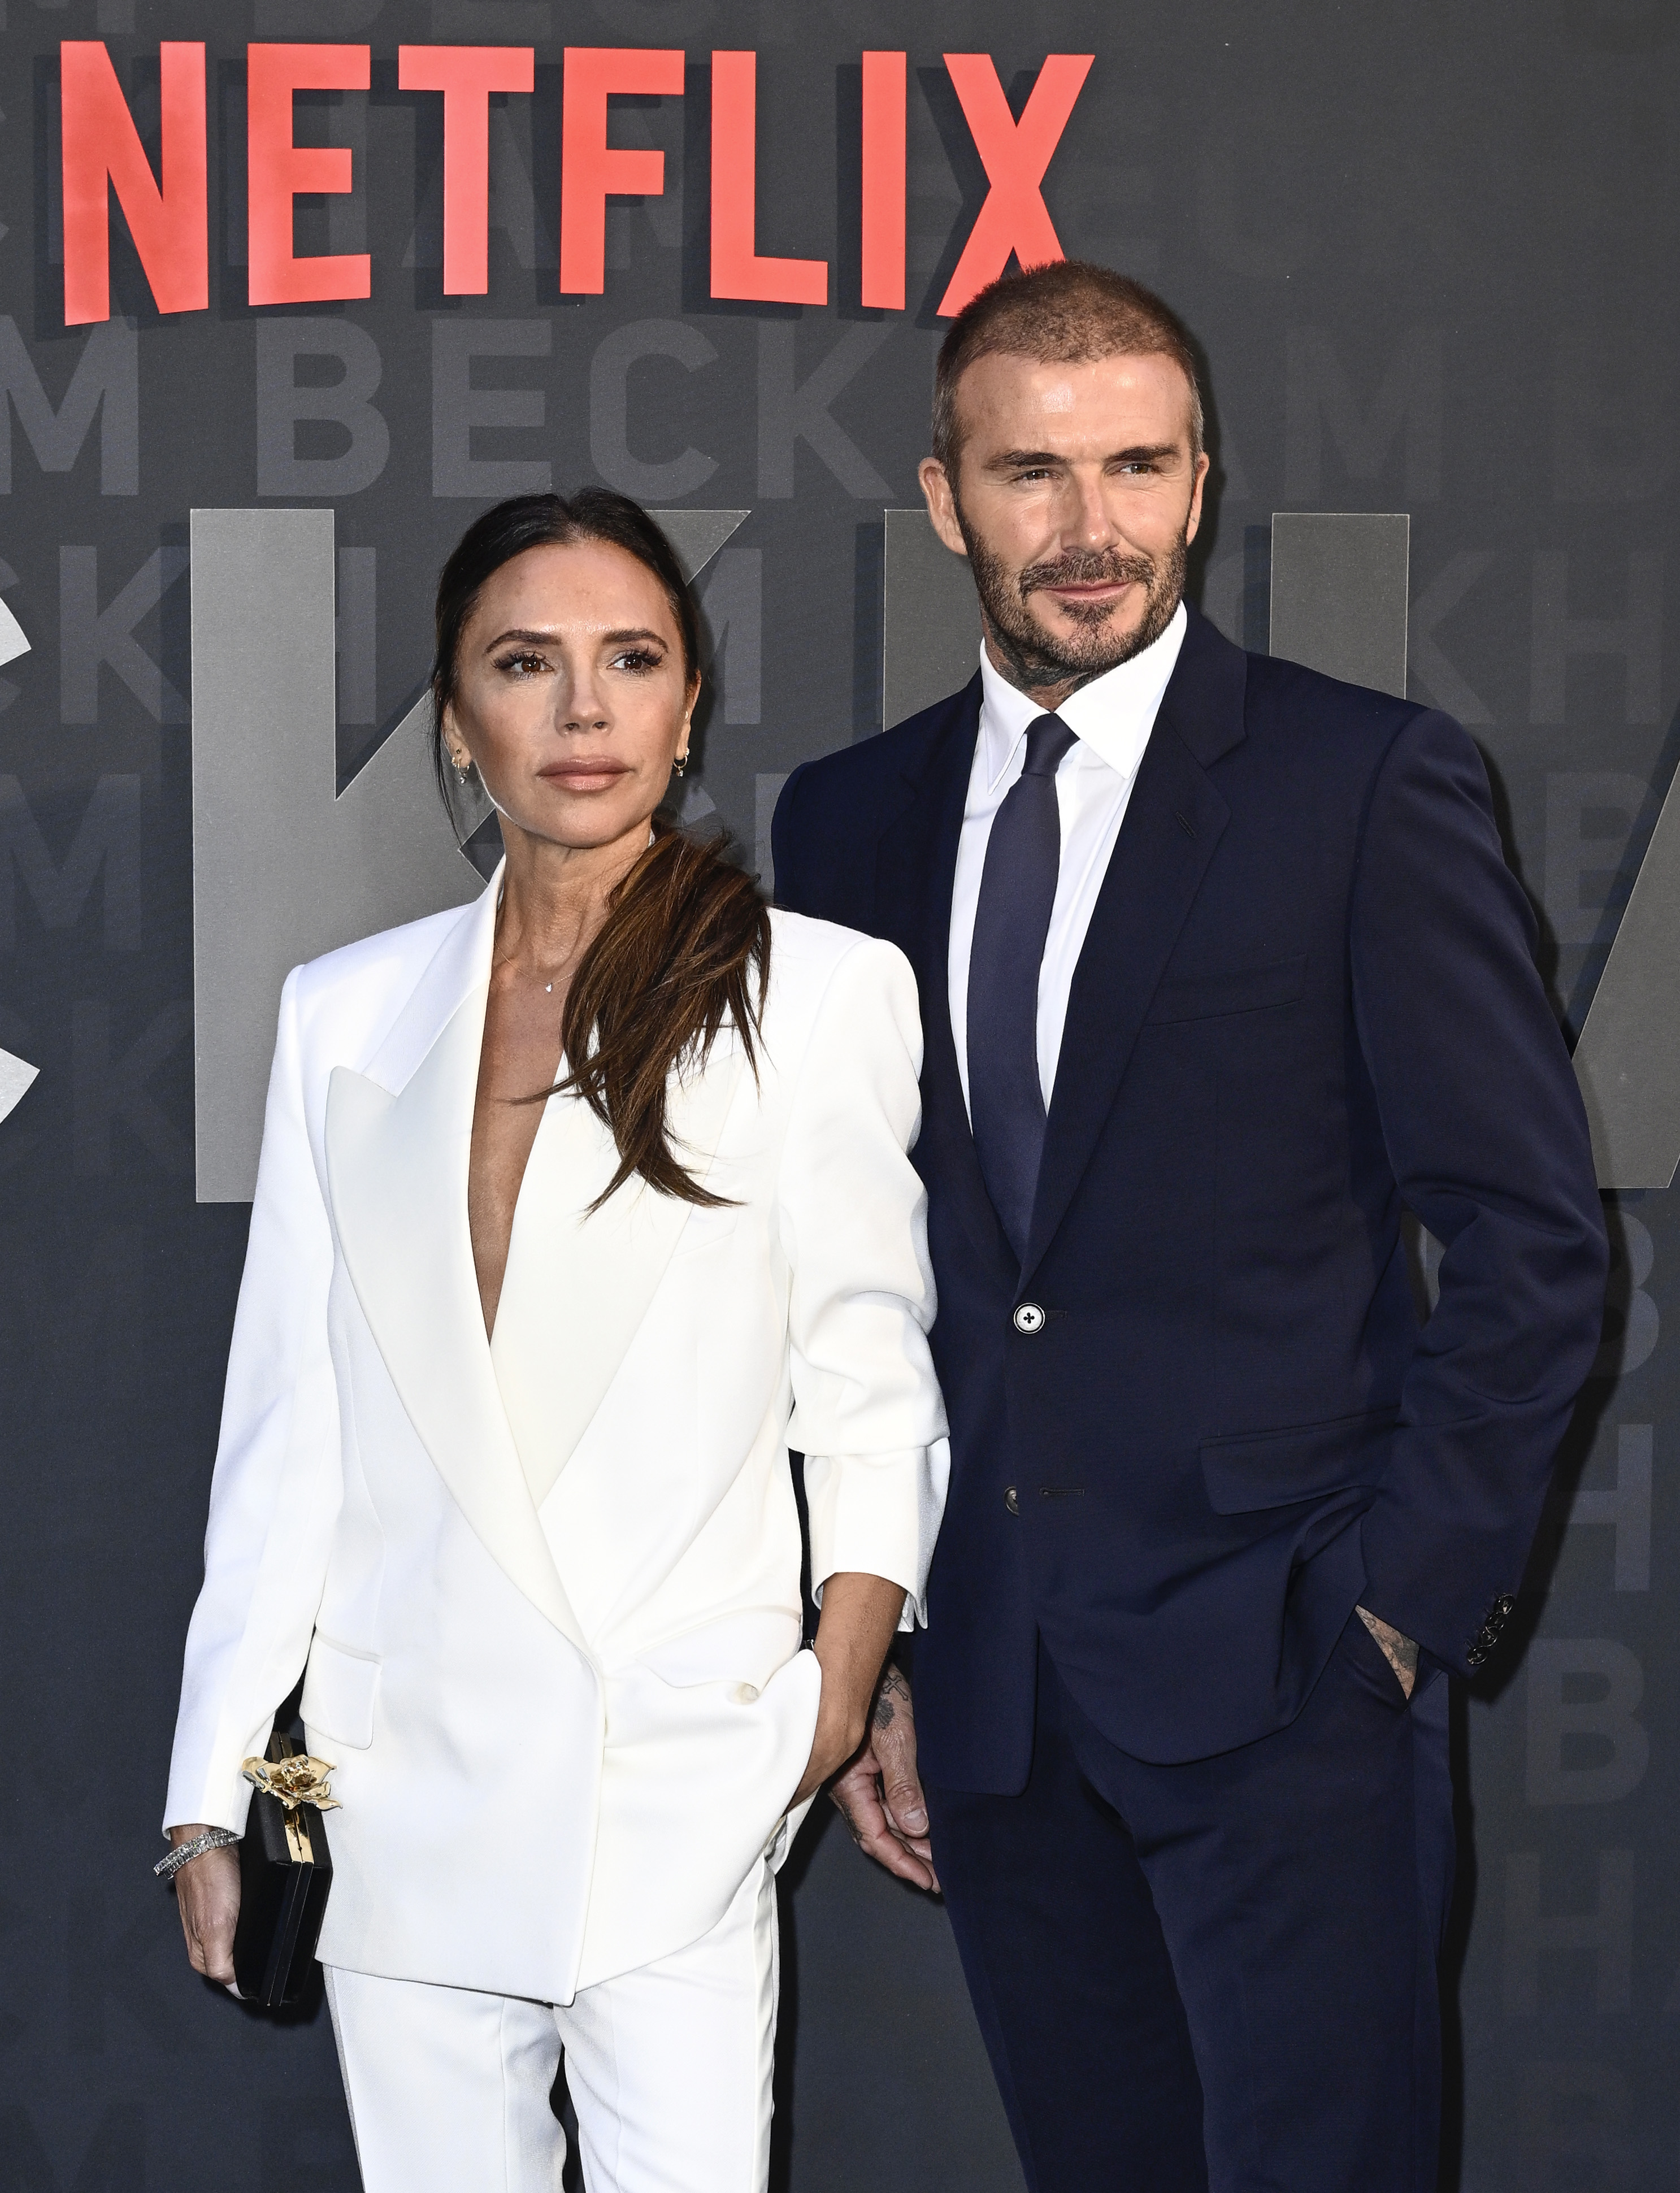 Victoria y David Beckham asisten al estreno de Netflix 'Beckham' en el Reino Unido en The Curzon Mayfair en Londres, Inglaterra, el 3 de octubre de 2023. | Fuente: Getty Images